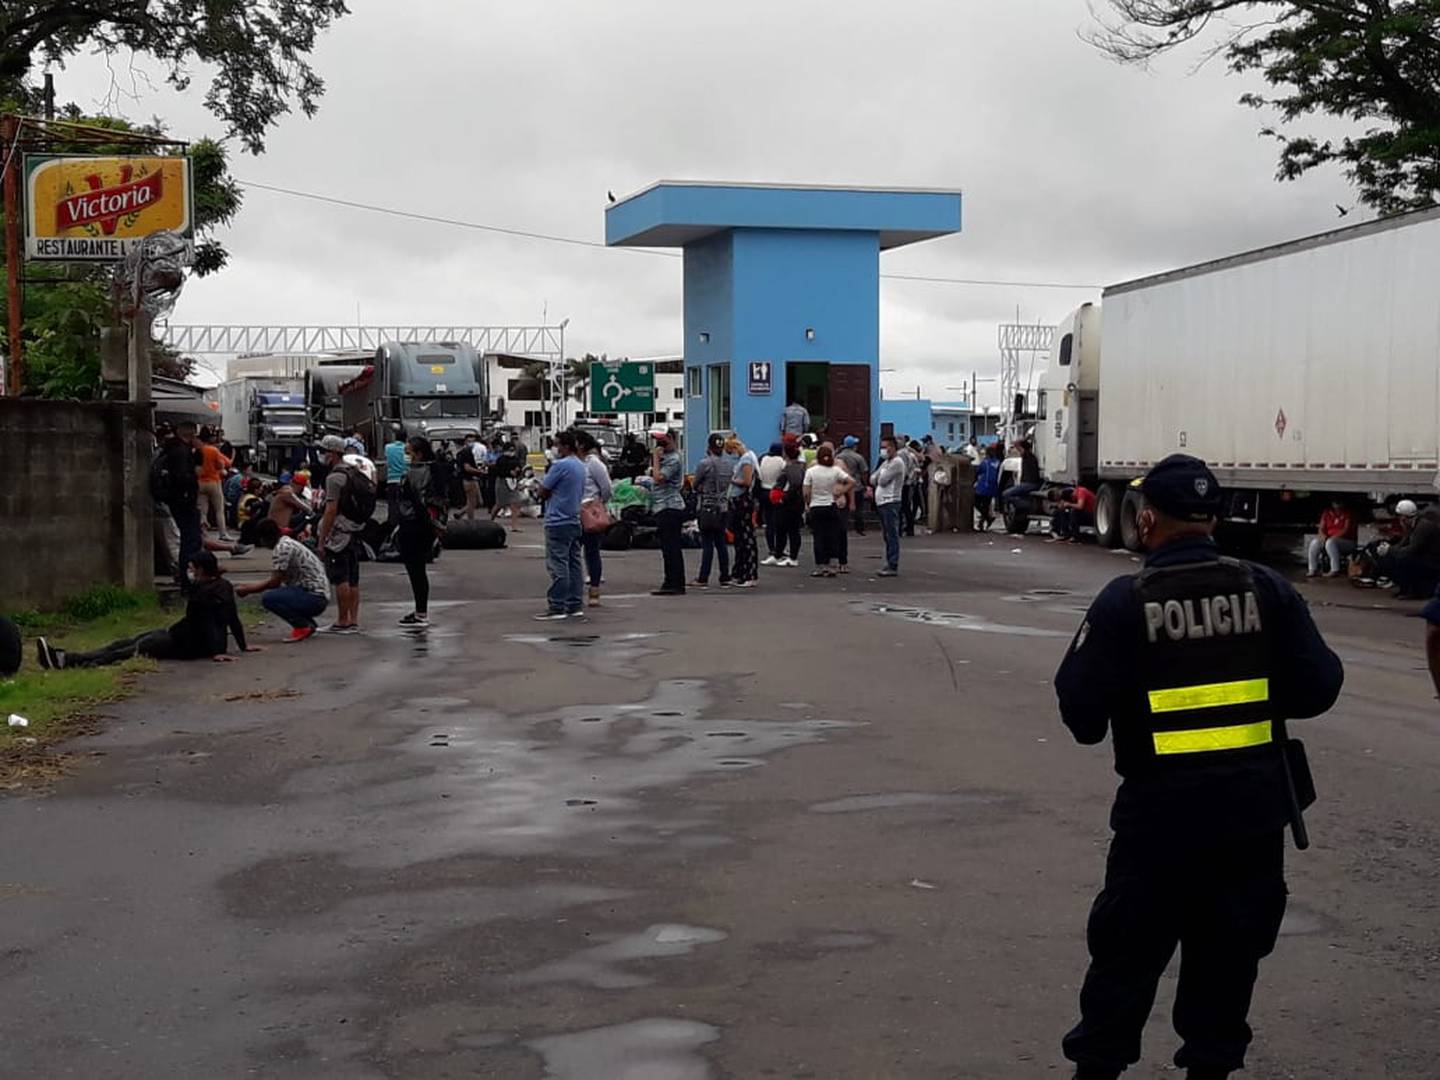 Más de 100 nicaraguenses están varados entre la línea fronteriza entre Costa Rica y Panamá por decisión de su gobierno. Foto cortesía.